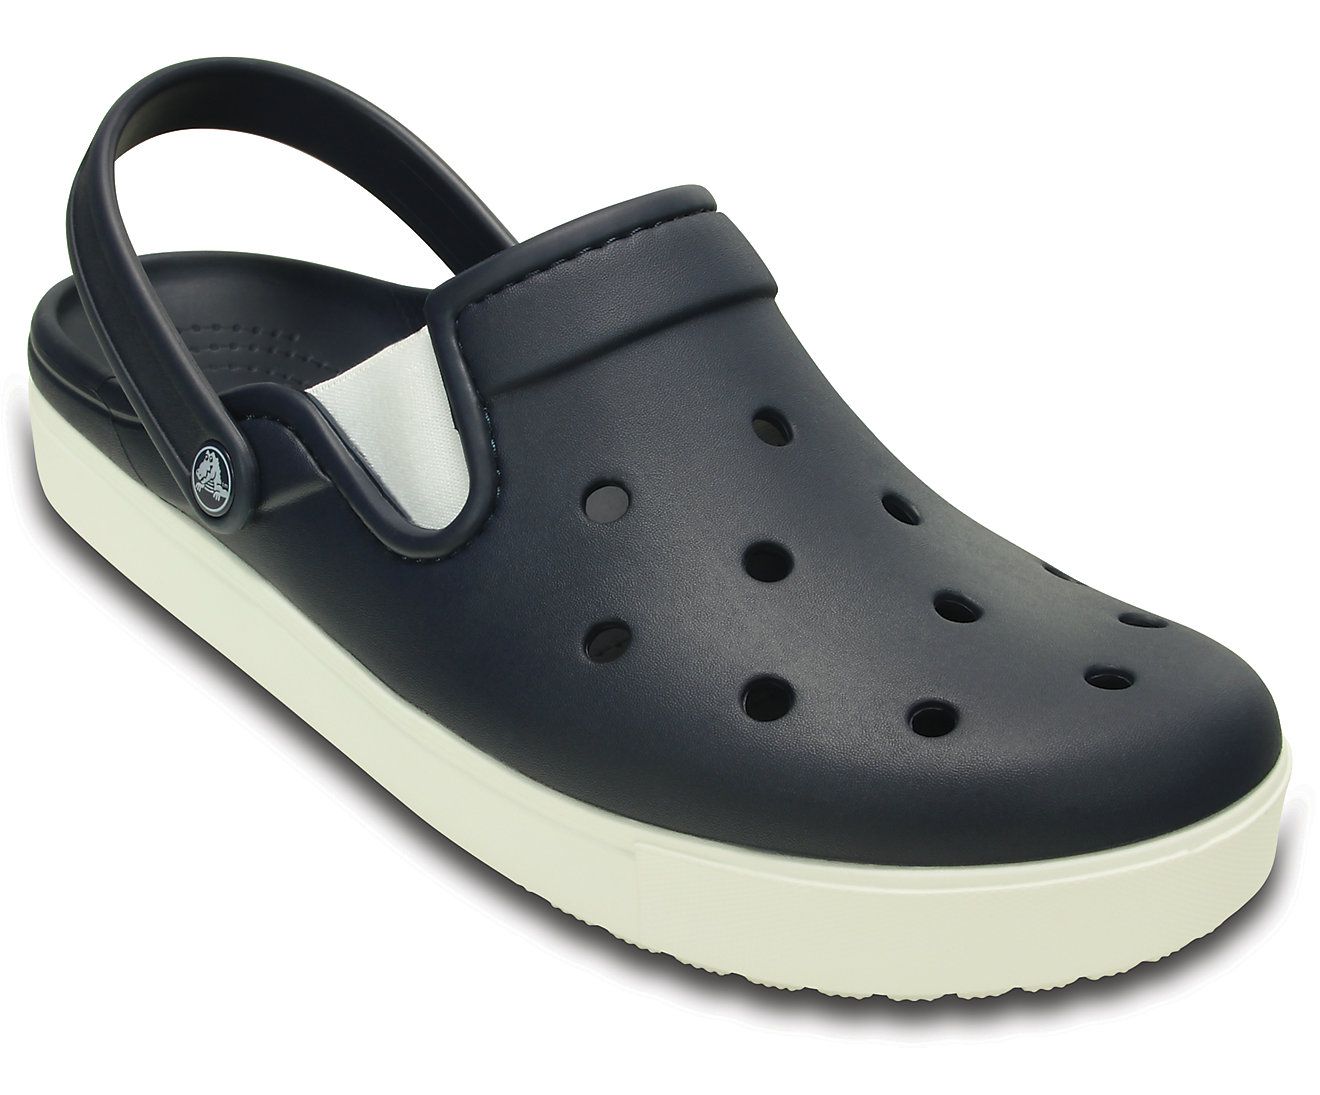 Crocs Navy Croslite Floater Sandals - Buy Crocs Navy Croslite Floater ...